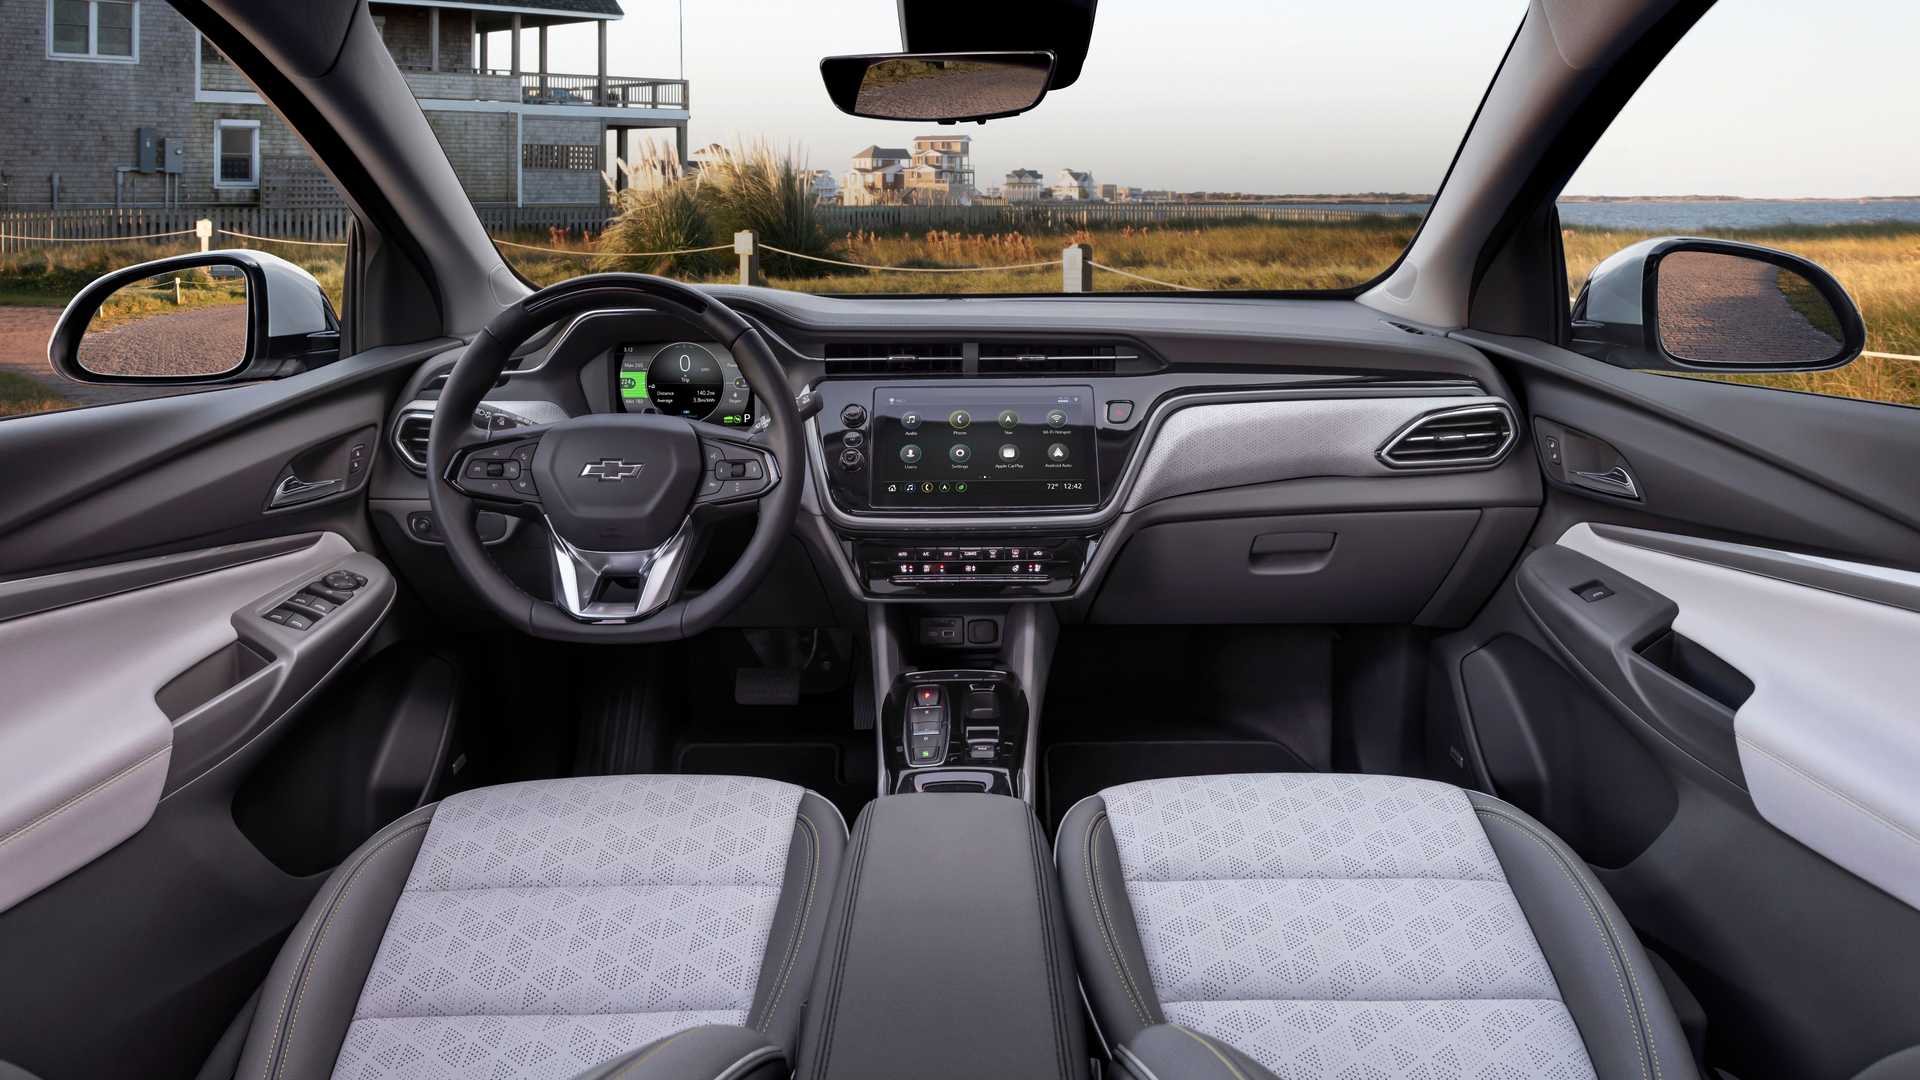 Chevrolet Bolt Interior